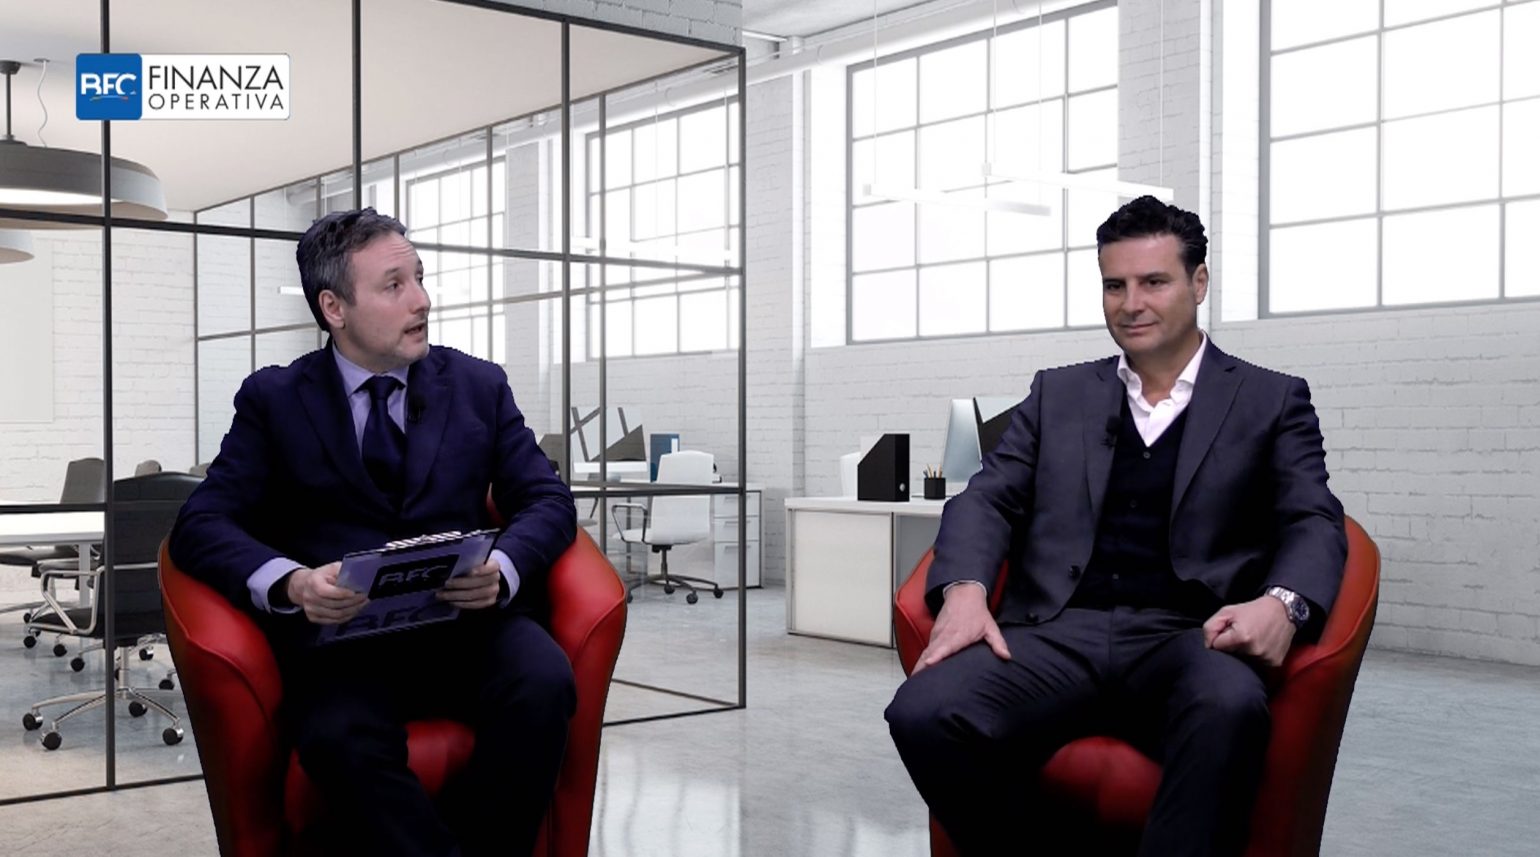 Video-intervista di Finanza Operativa all'Ad Stefano Mach